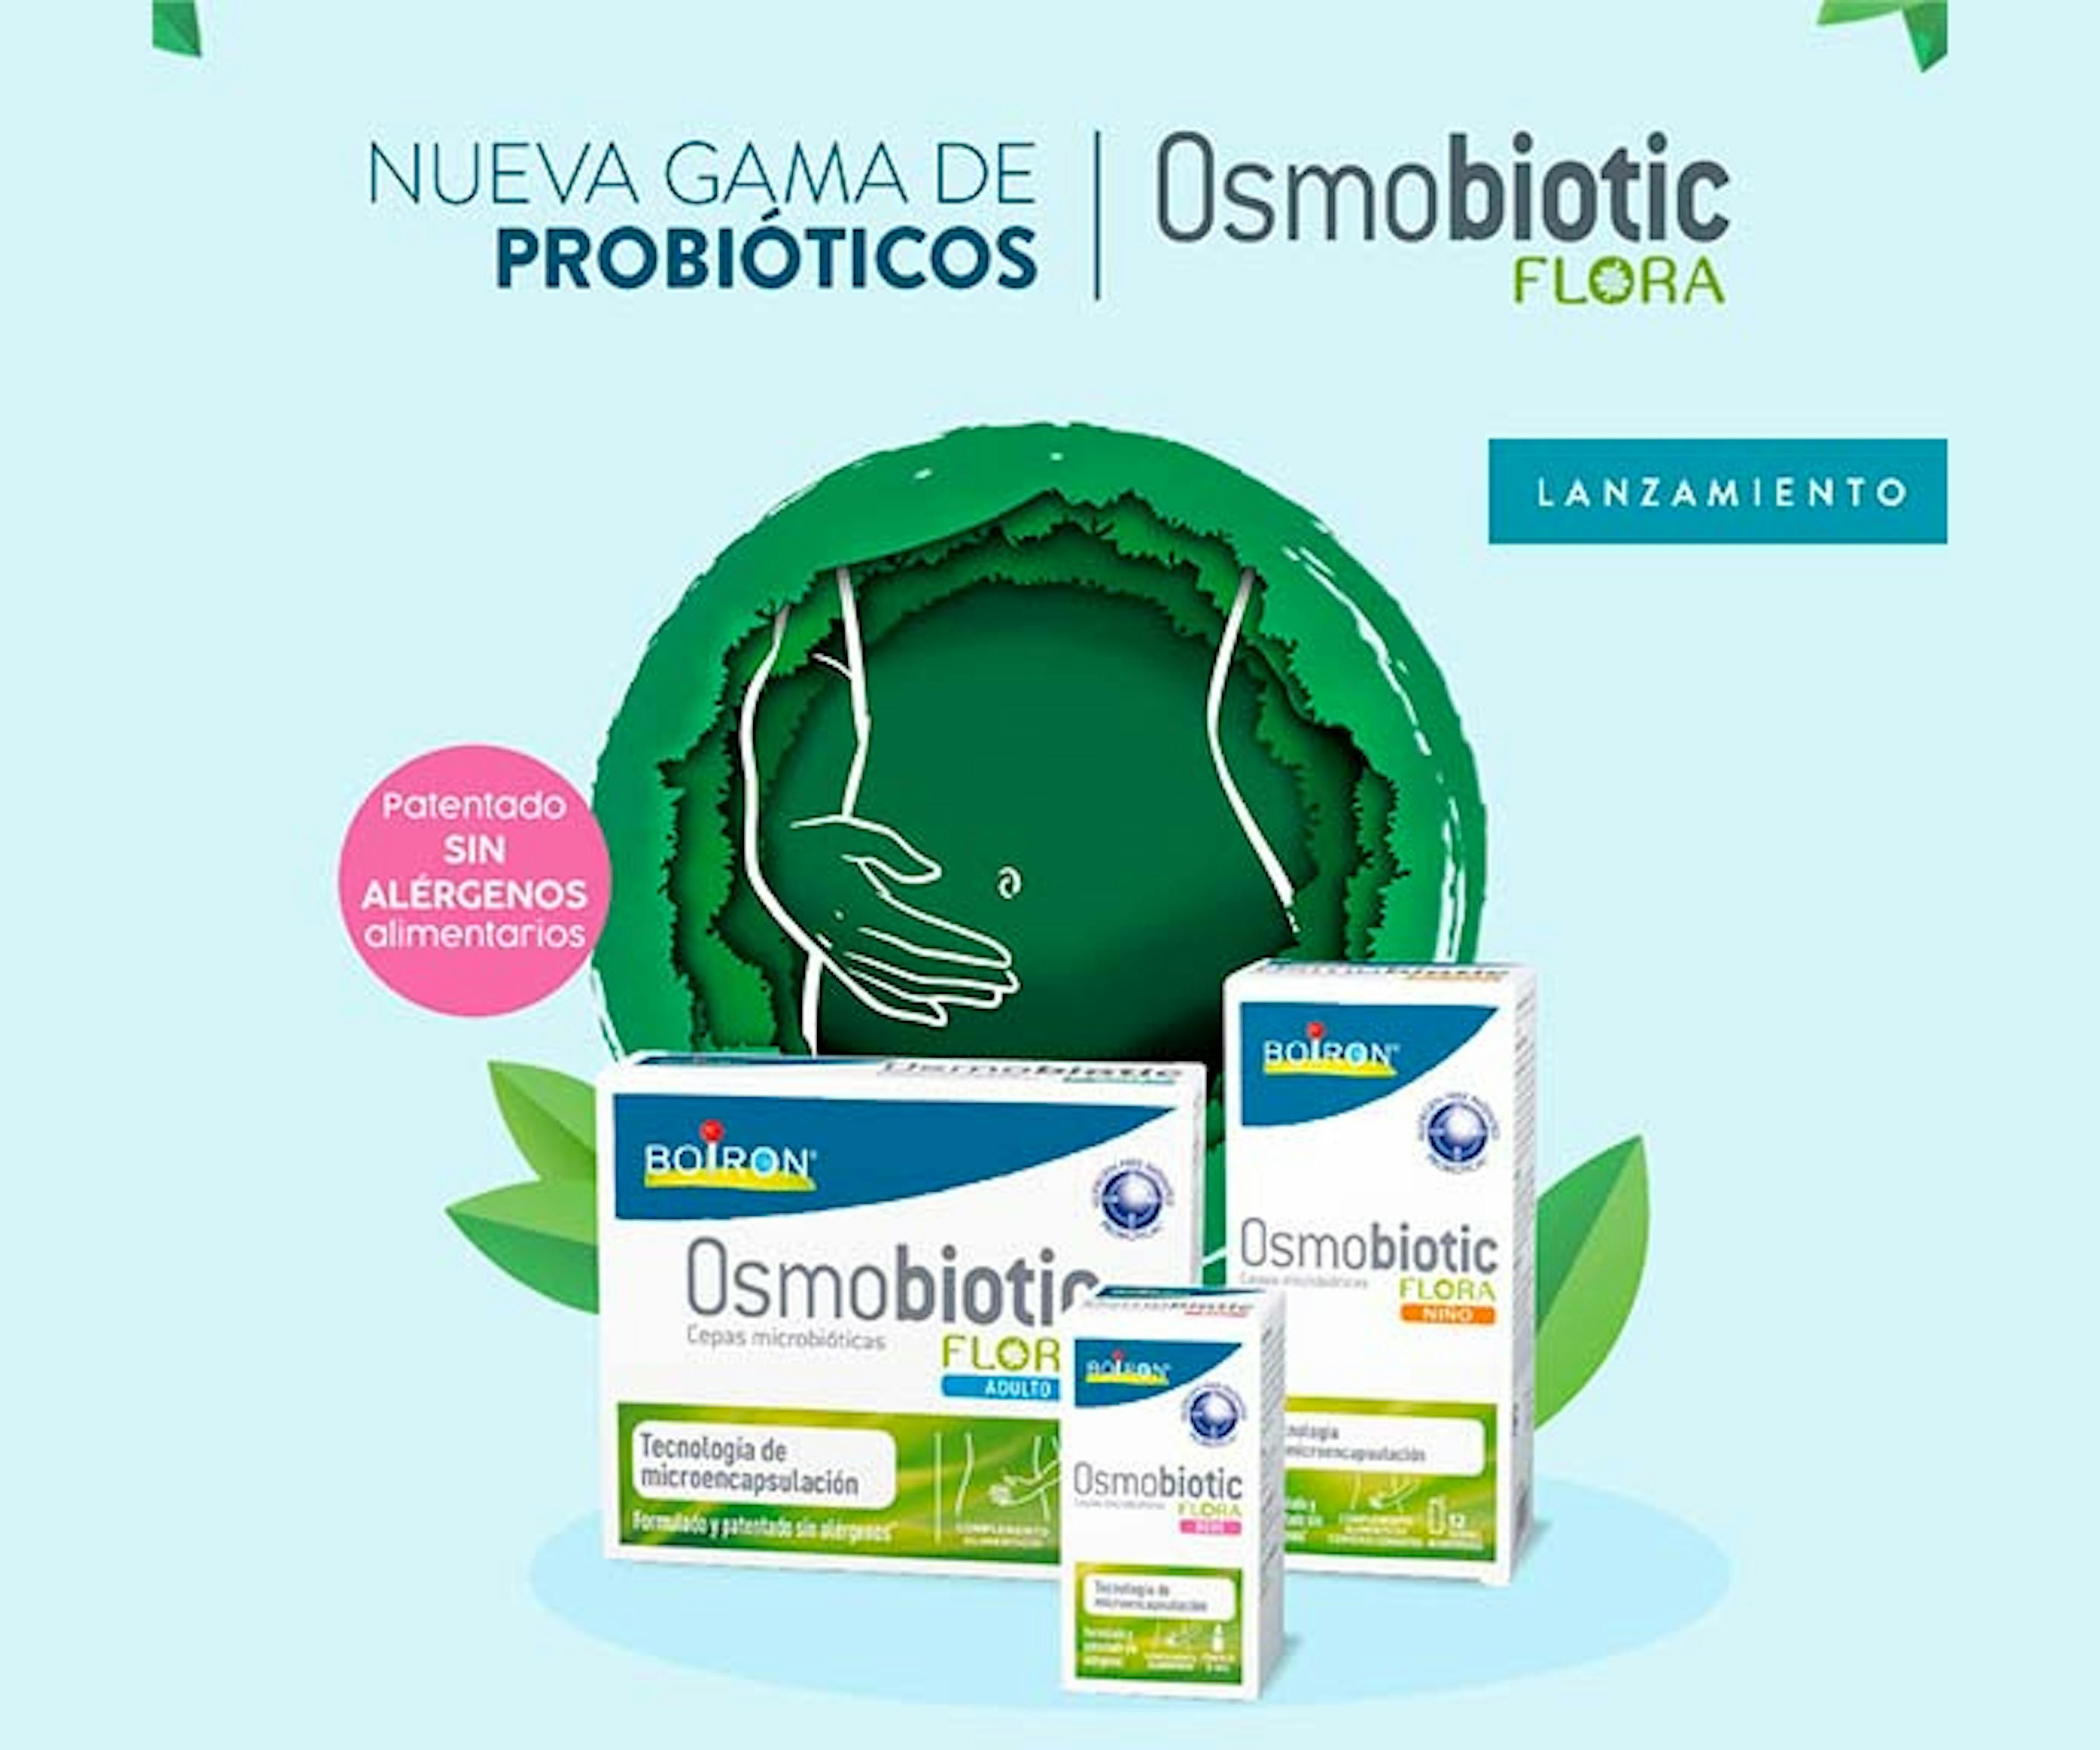 BOIRON entra en el mercado de probióticos con OSMOBIOTIC FLORA